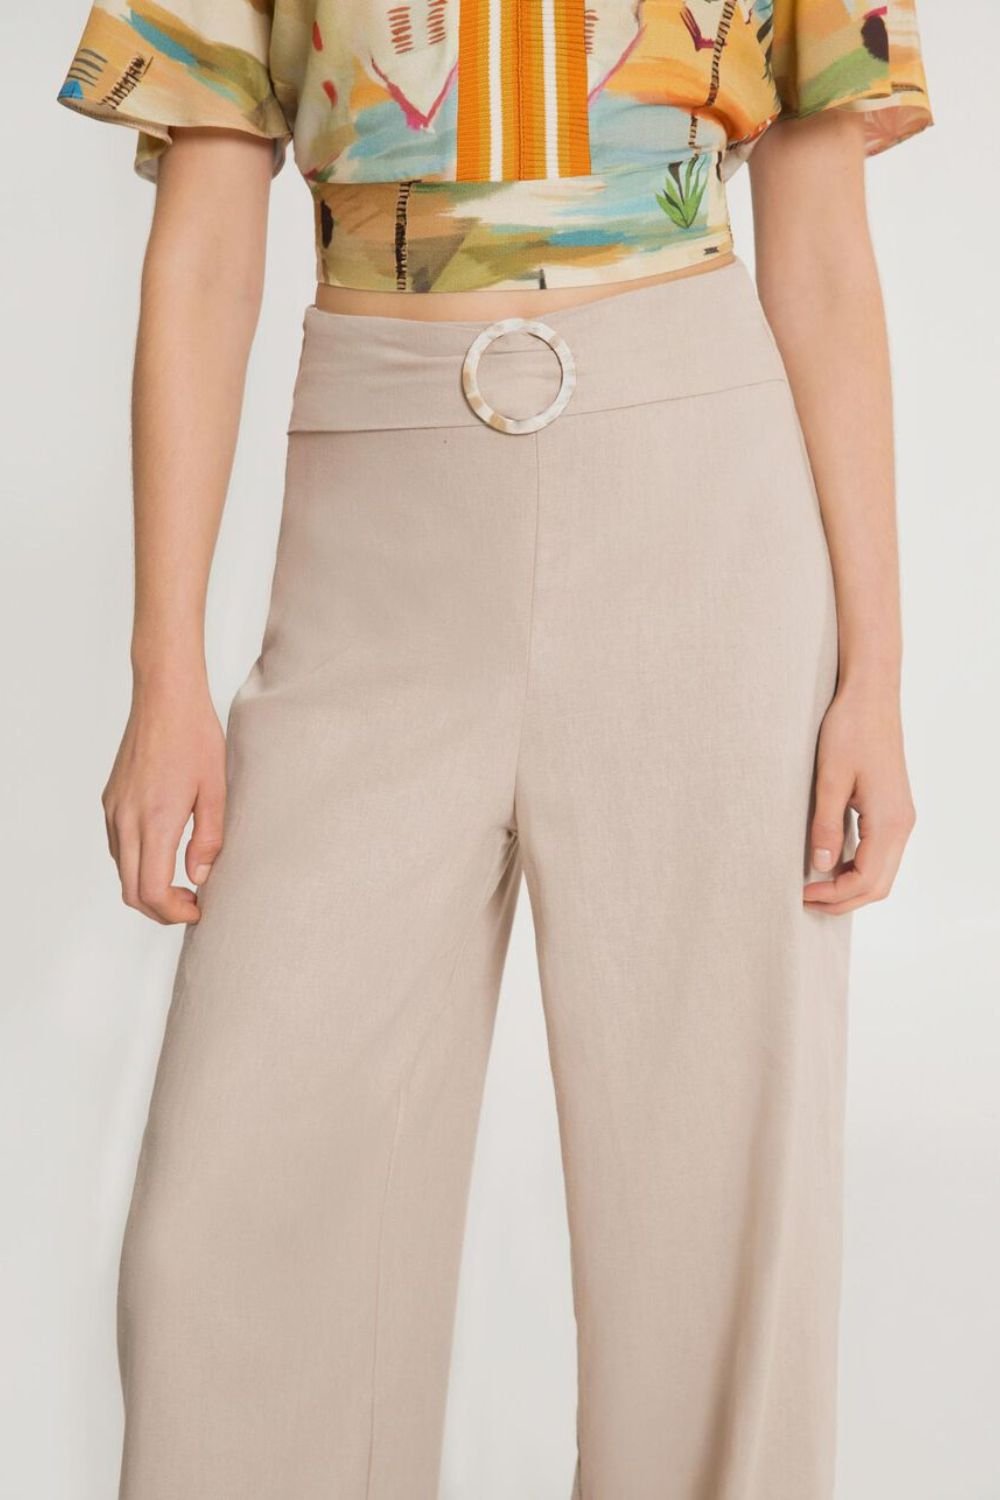 Calça Feminina Pantalona em Linho com Cinto - Etiqueta Modas